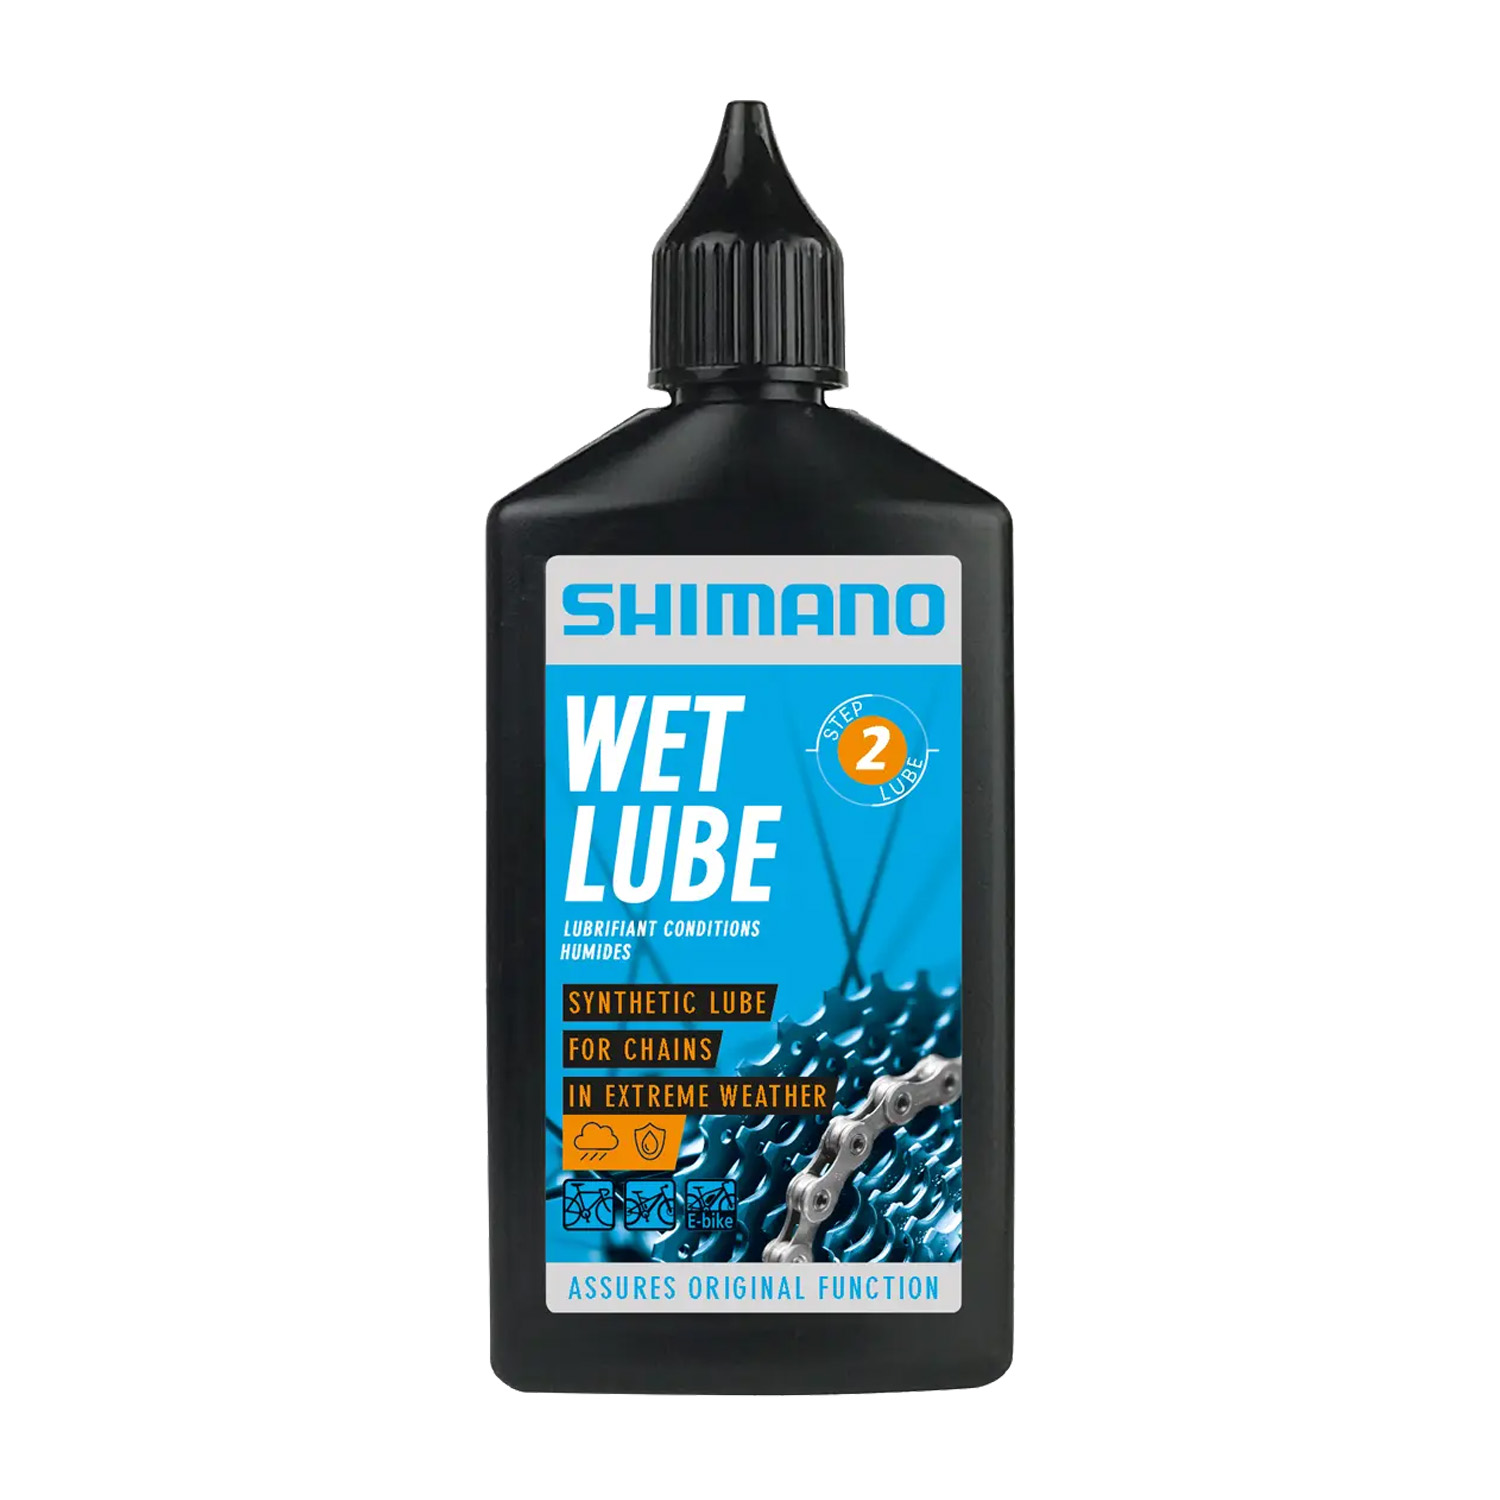 Shimano Wet lube